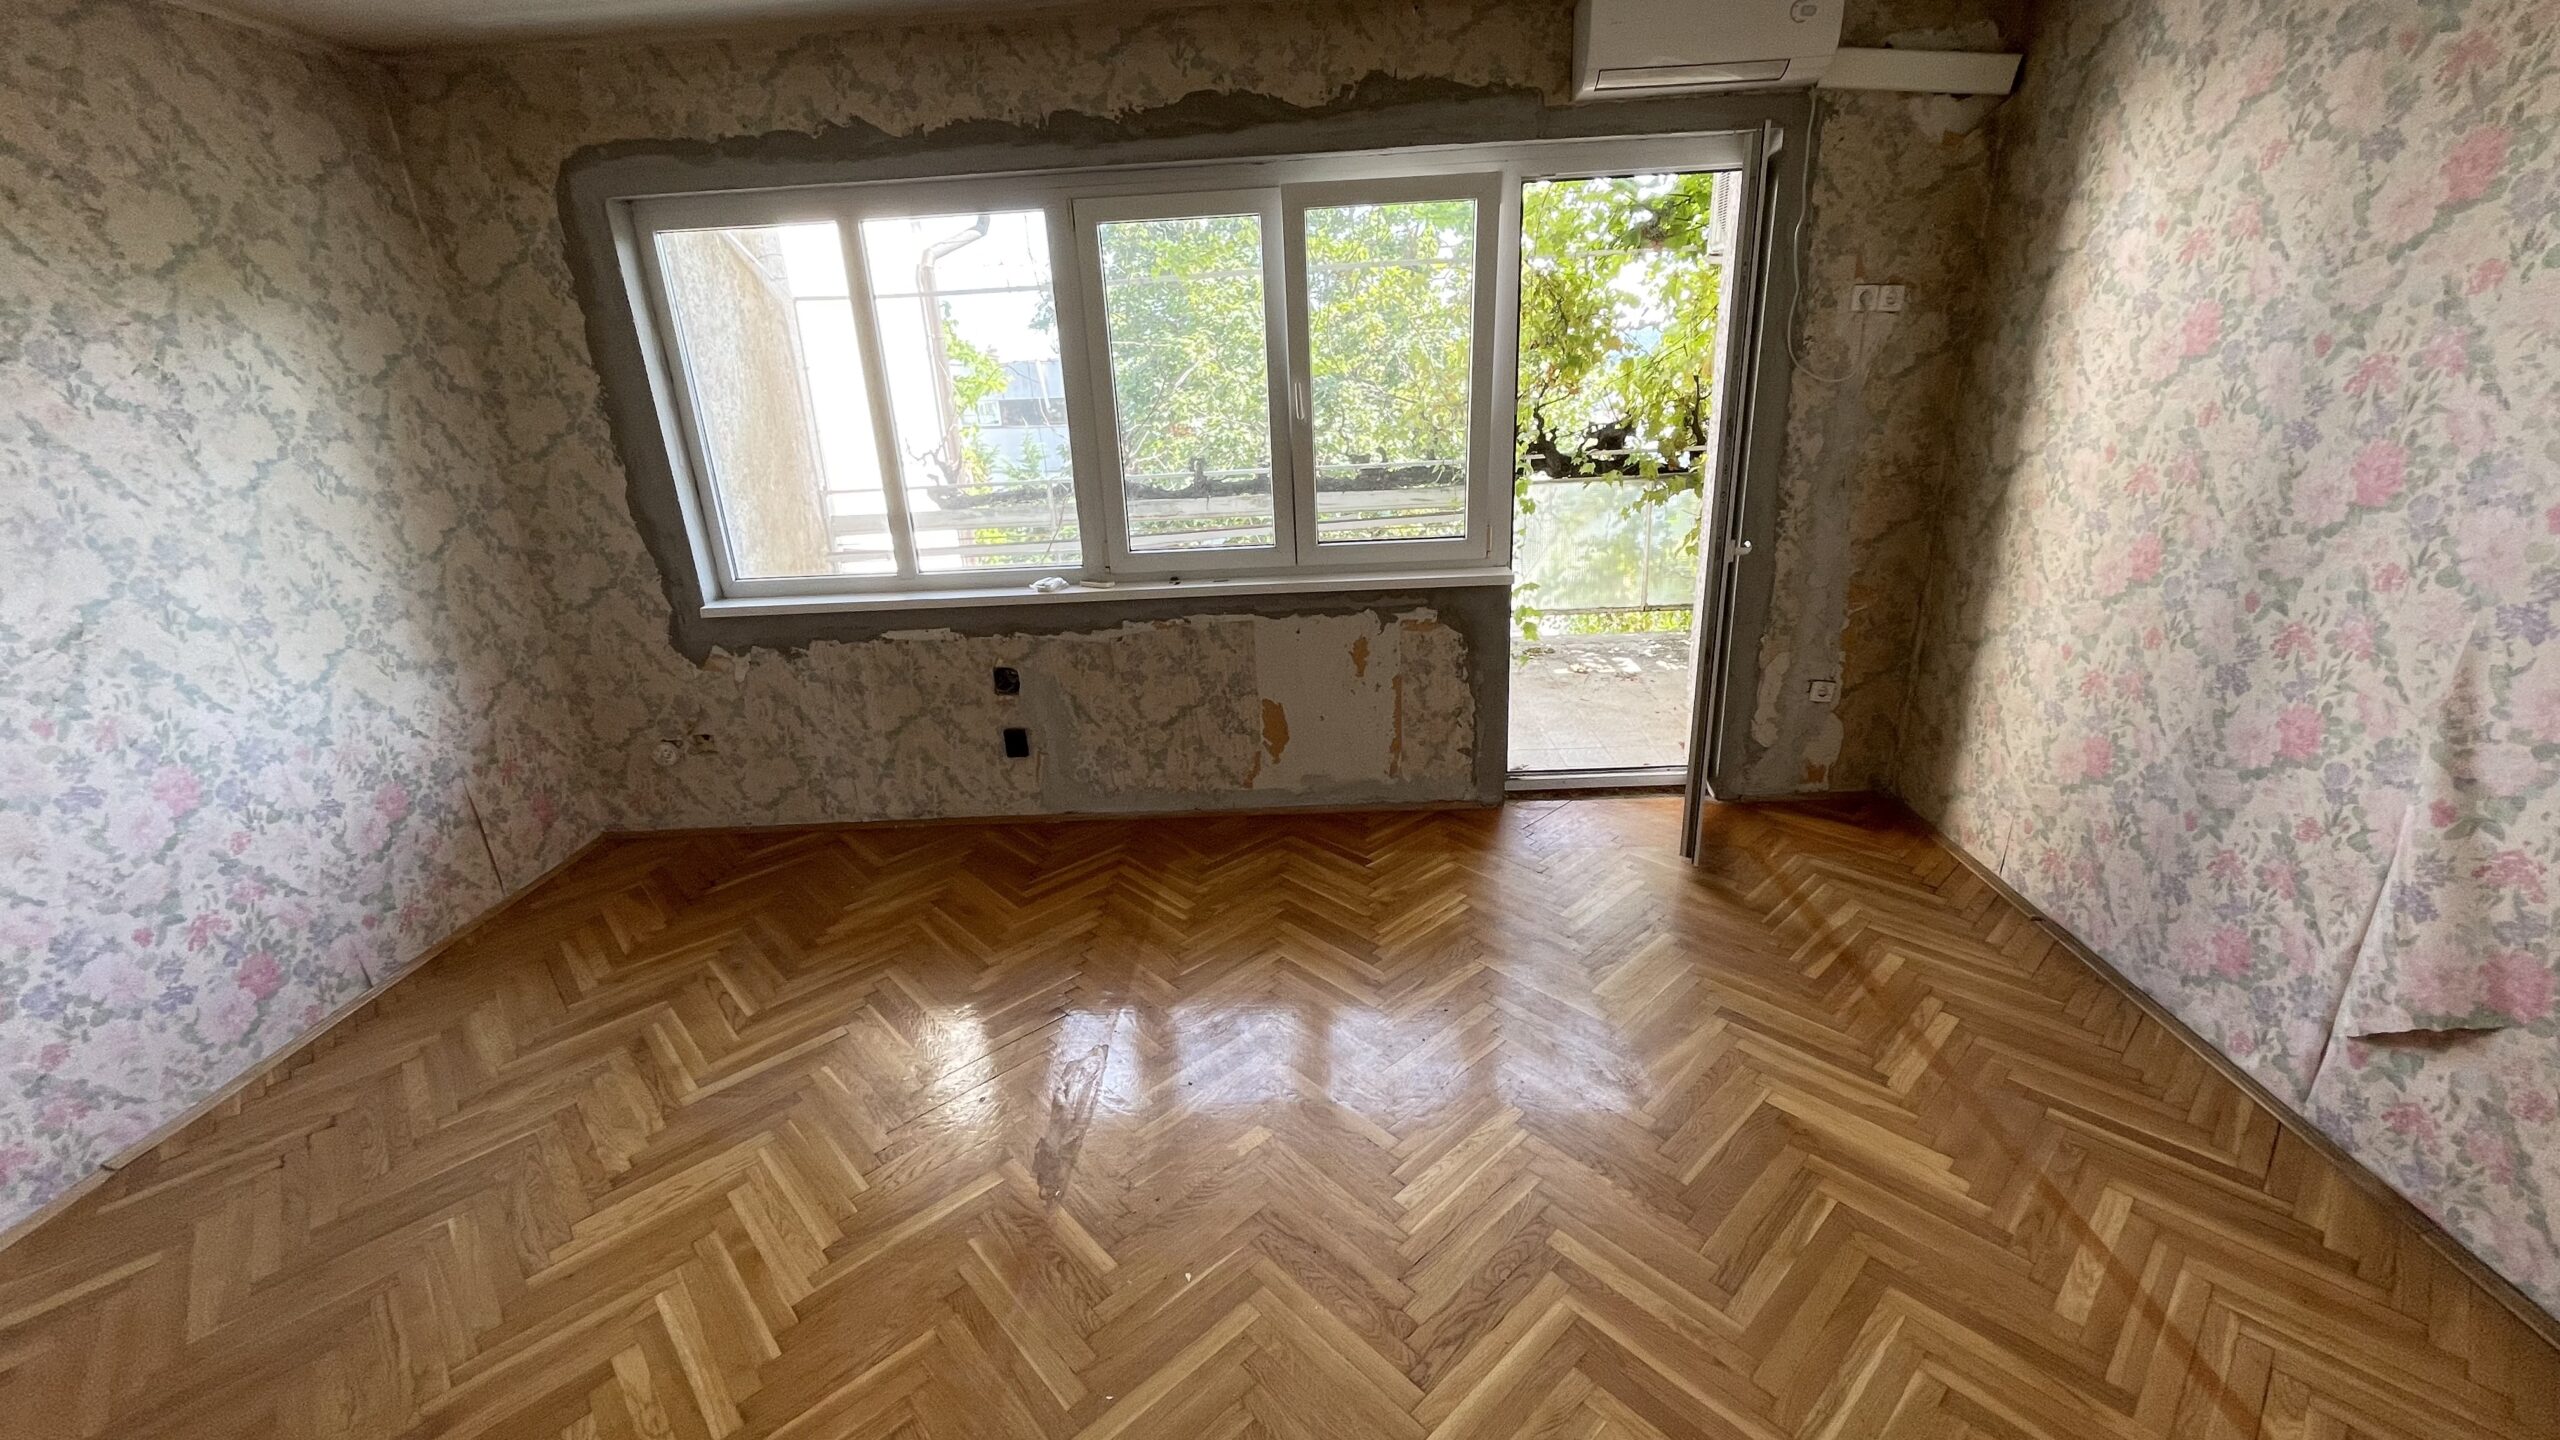 Pécs, Angster J. utcában felújítandó 120m2 sorház ingatlan eladó